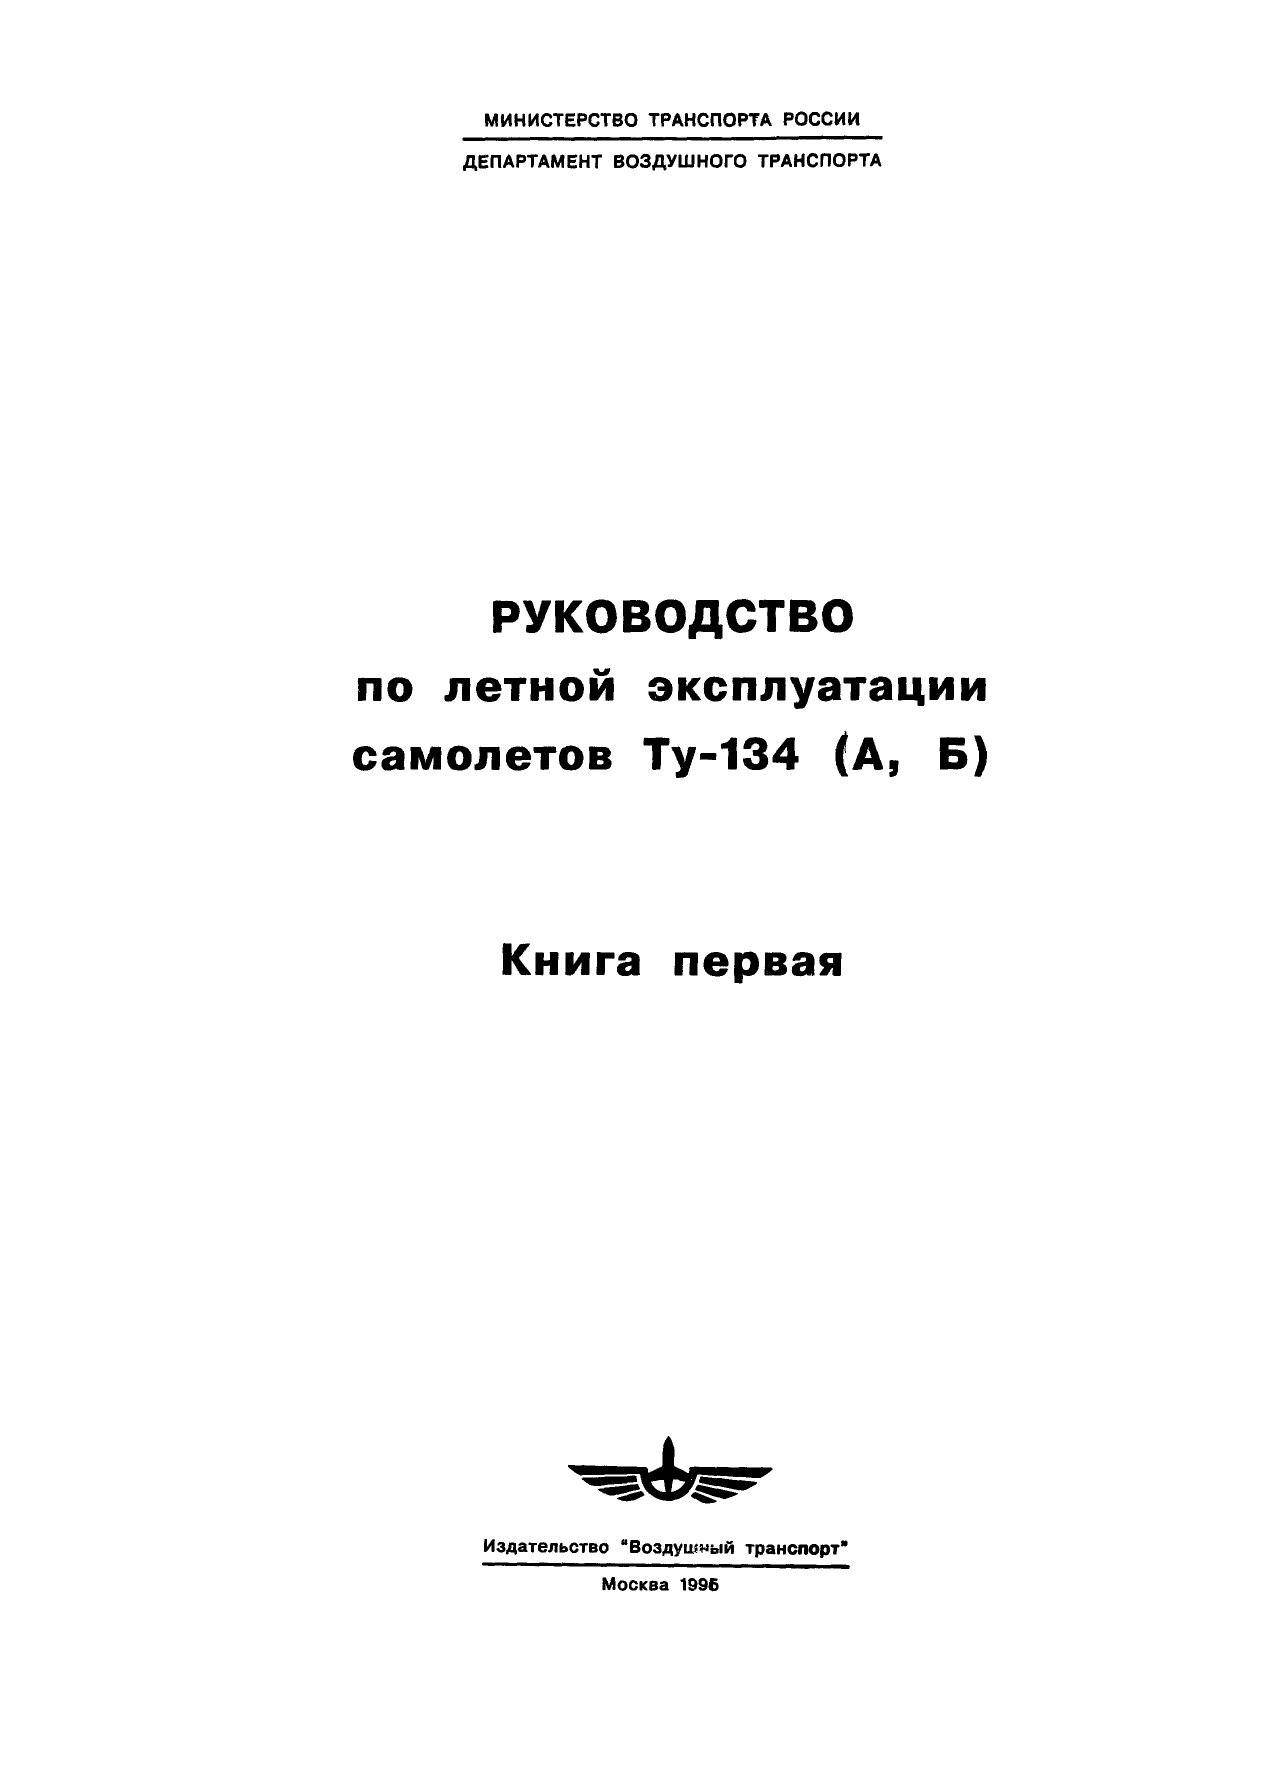 Руководство по летной эксплуатации самолетов Ту-134 (А, Б) (книга 1 из 2)